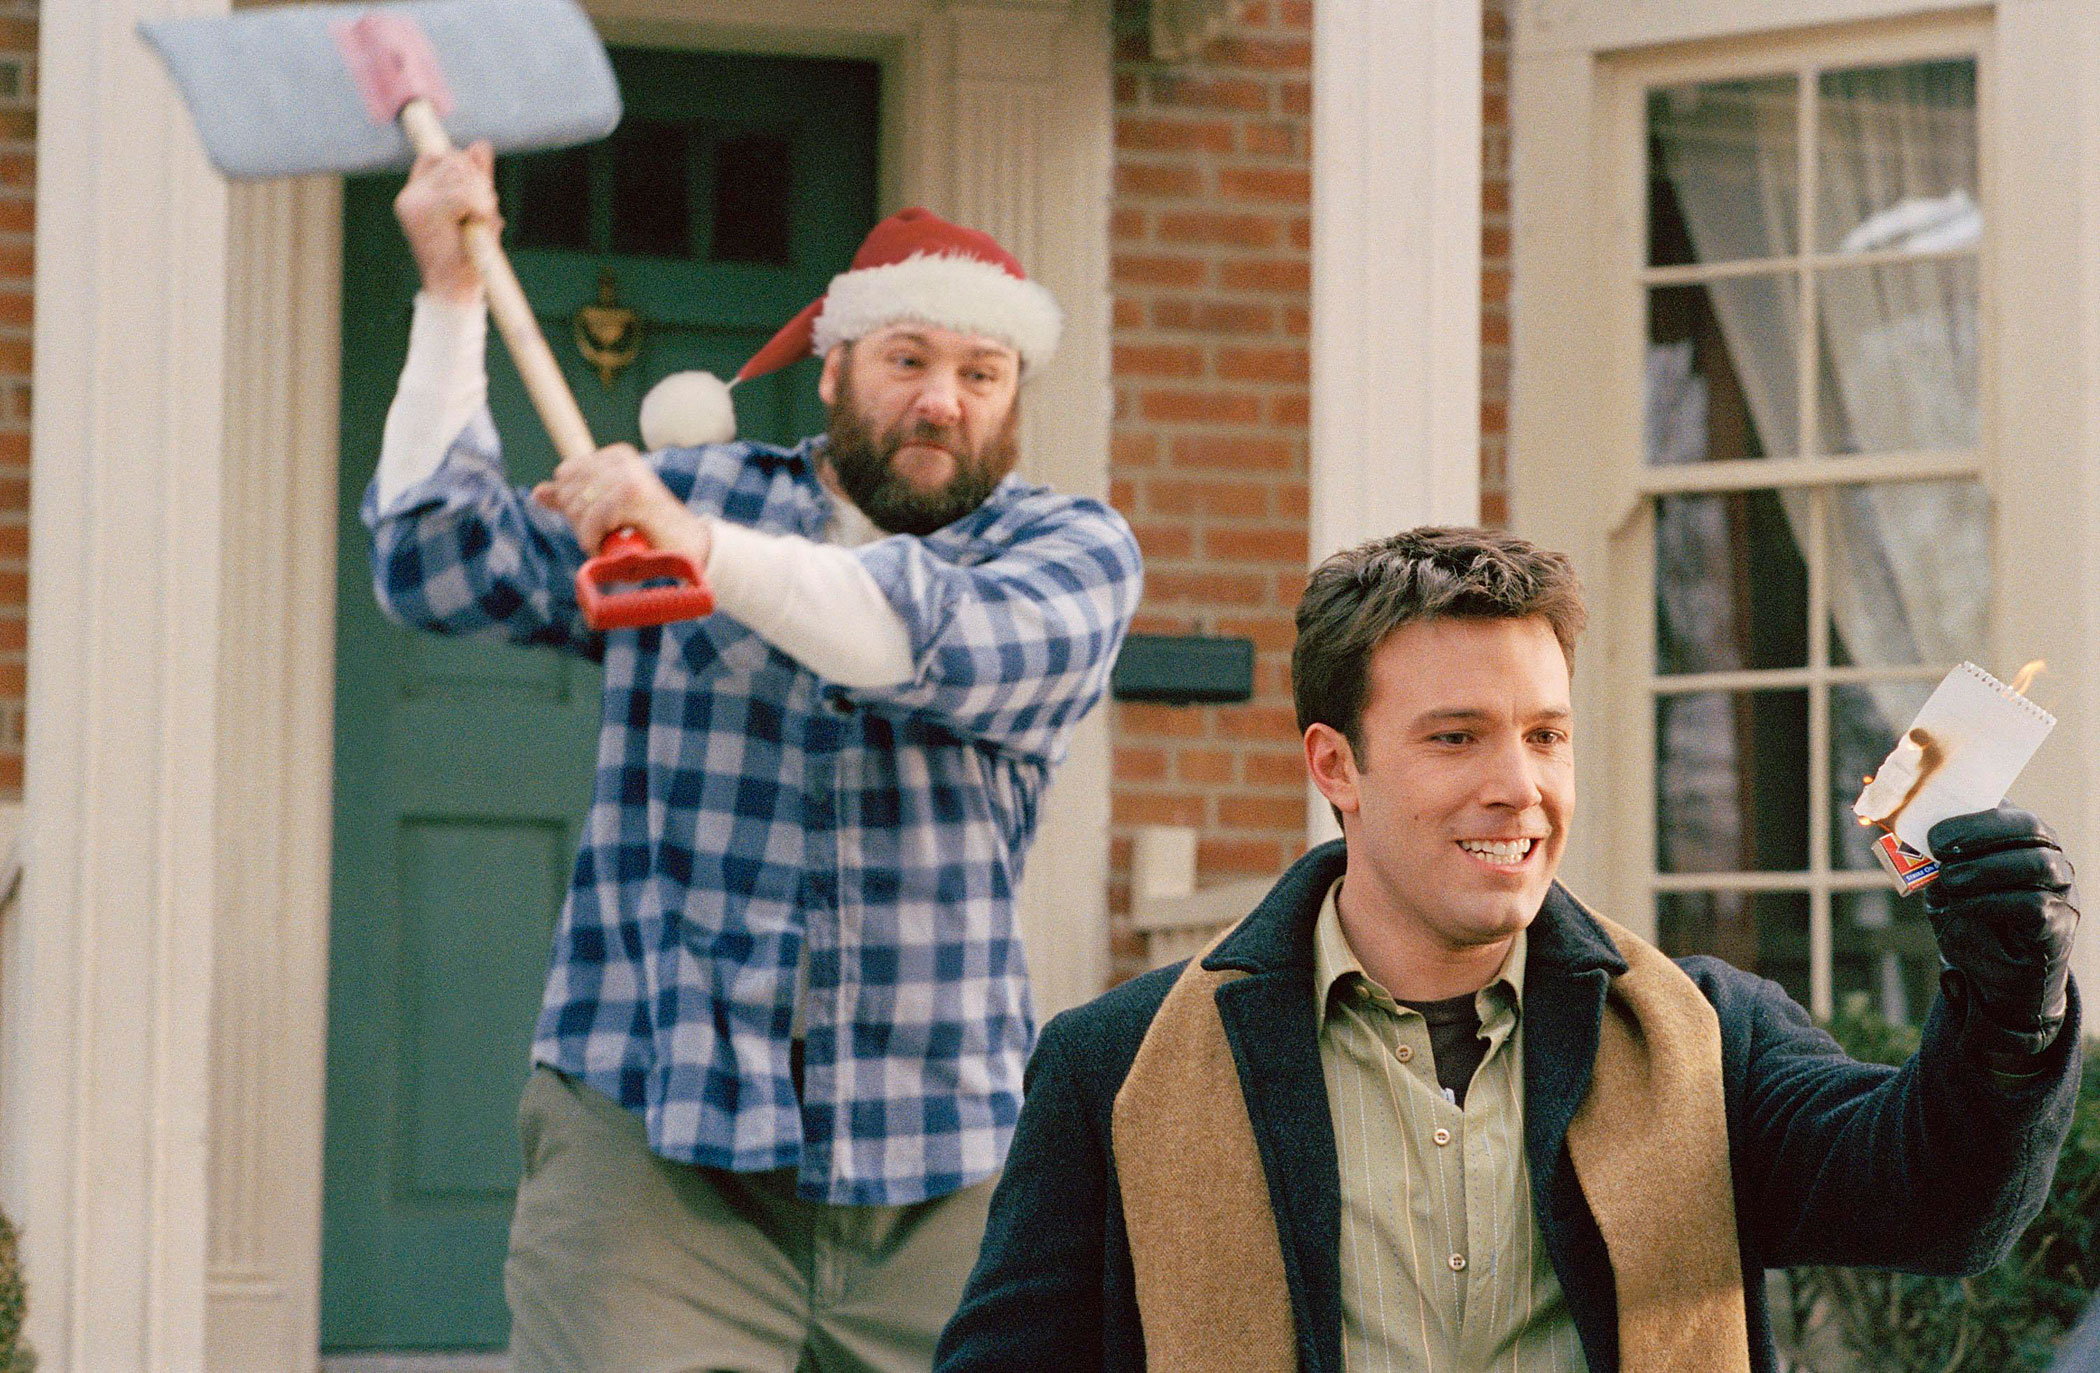 In the 2004 comedy Surviving Christmas, Gandolfini starred as Tom Valco opposite Ben Affleck.